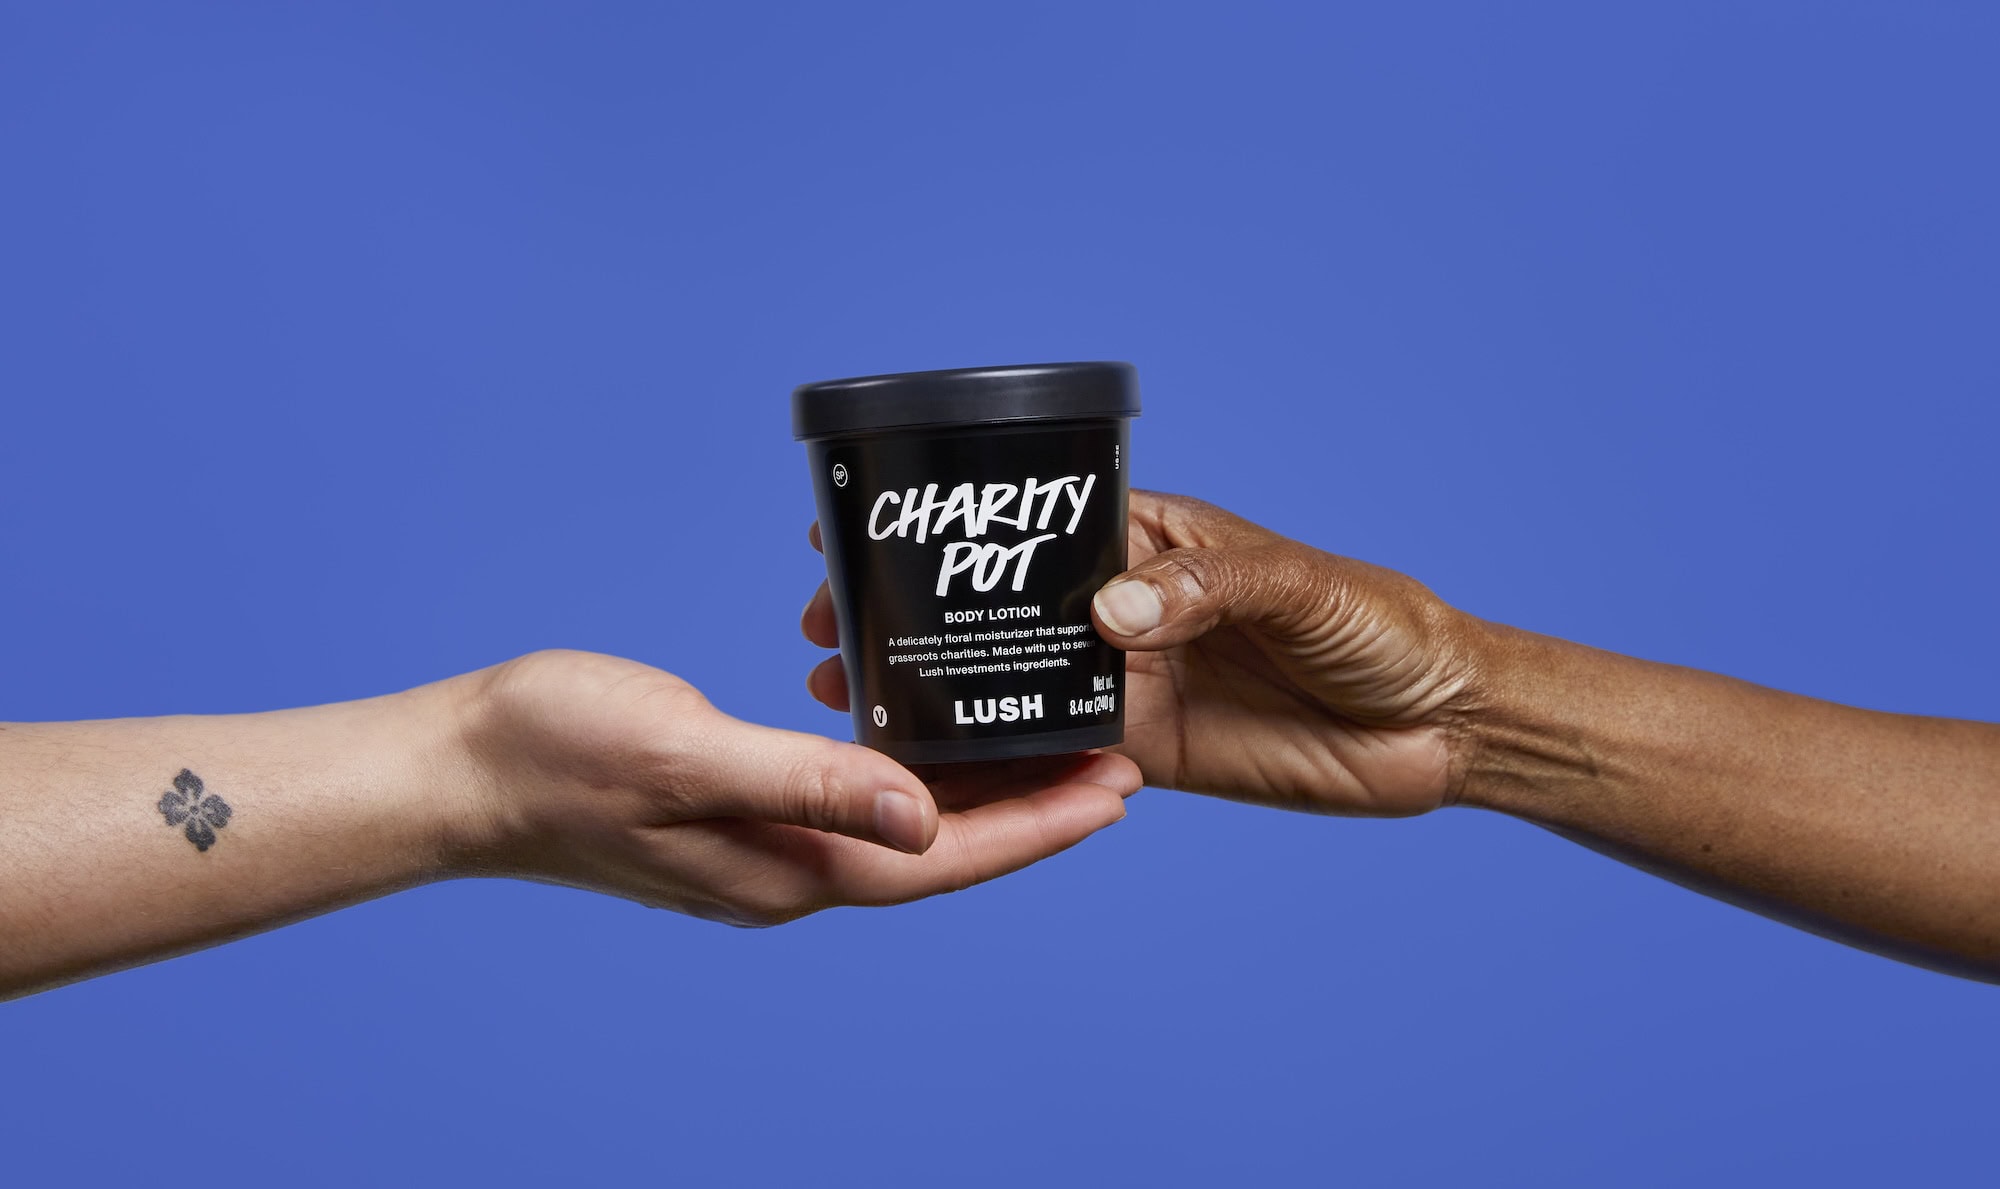 LUSH charity pot